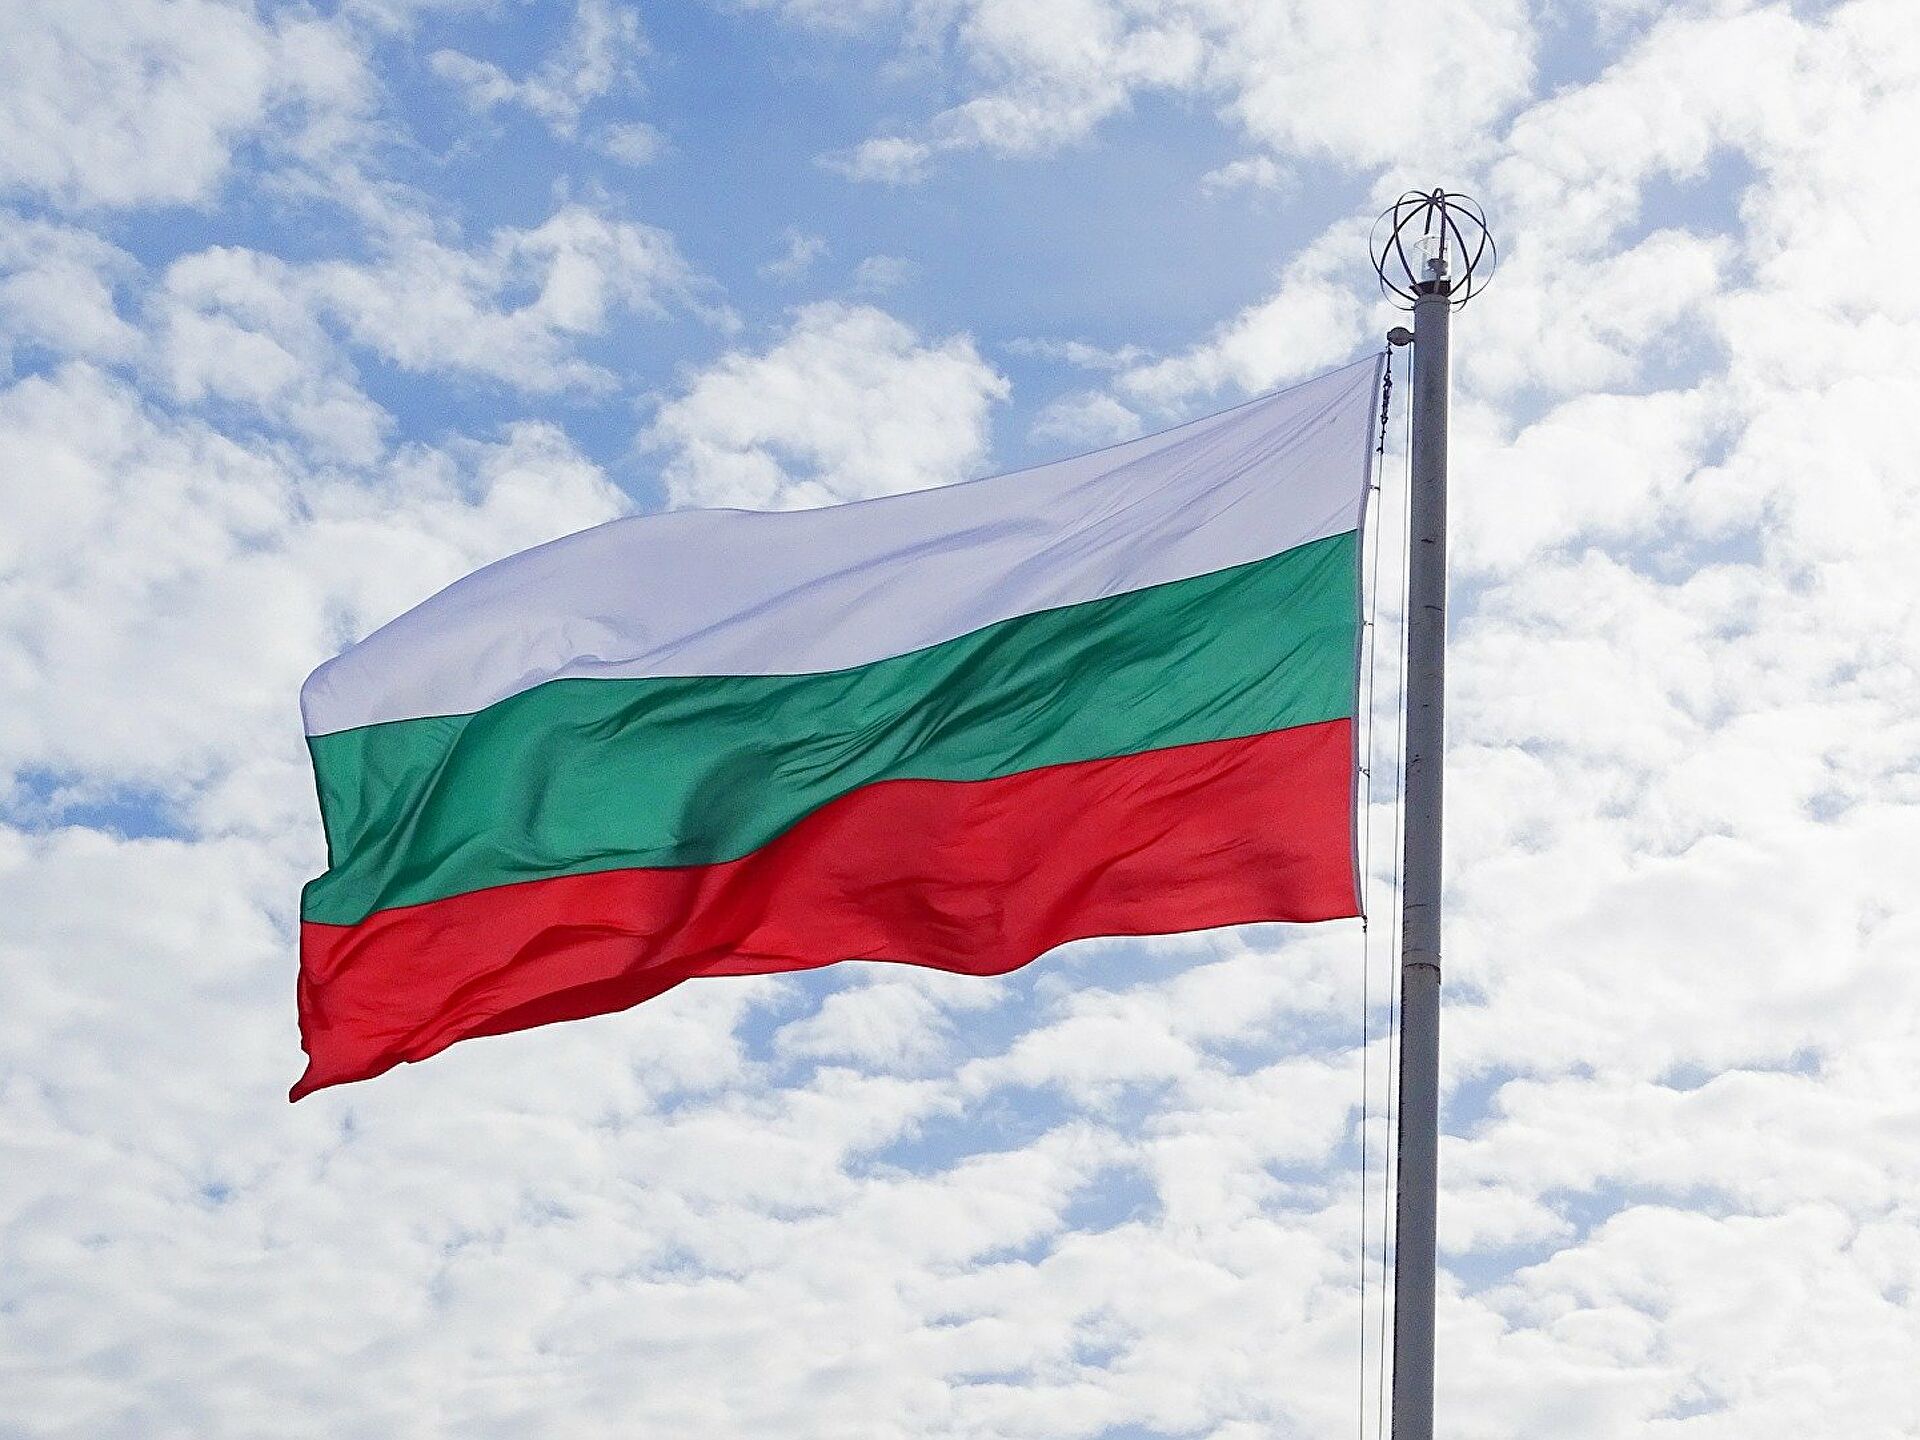 Βουλγαρία: Ο πρόεδρος Ράντεφ έδωσε εντολή σχηματισμού κυβέρνησης στο Σοσιαλιστικό Κόμμα